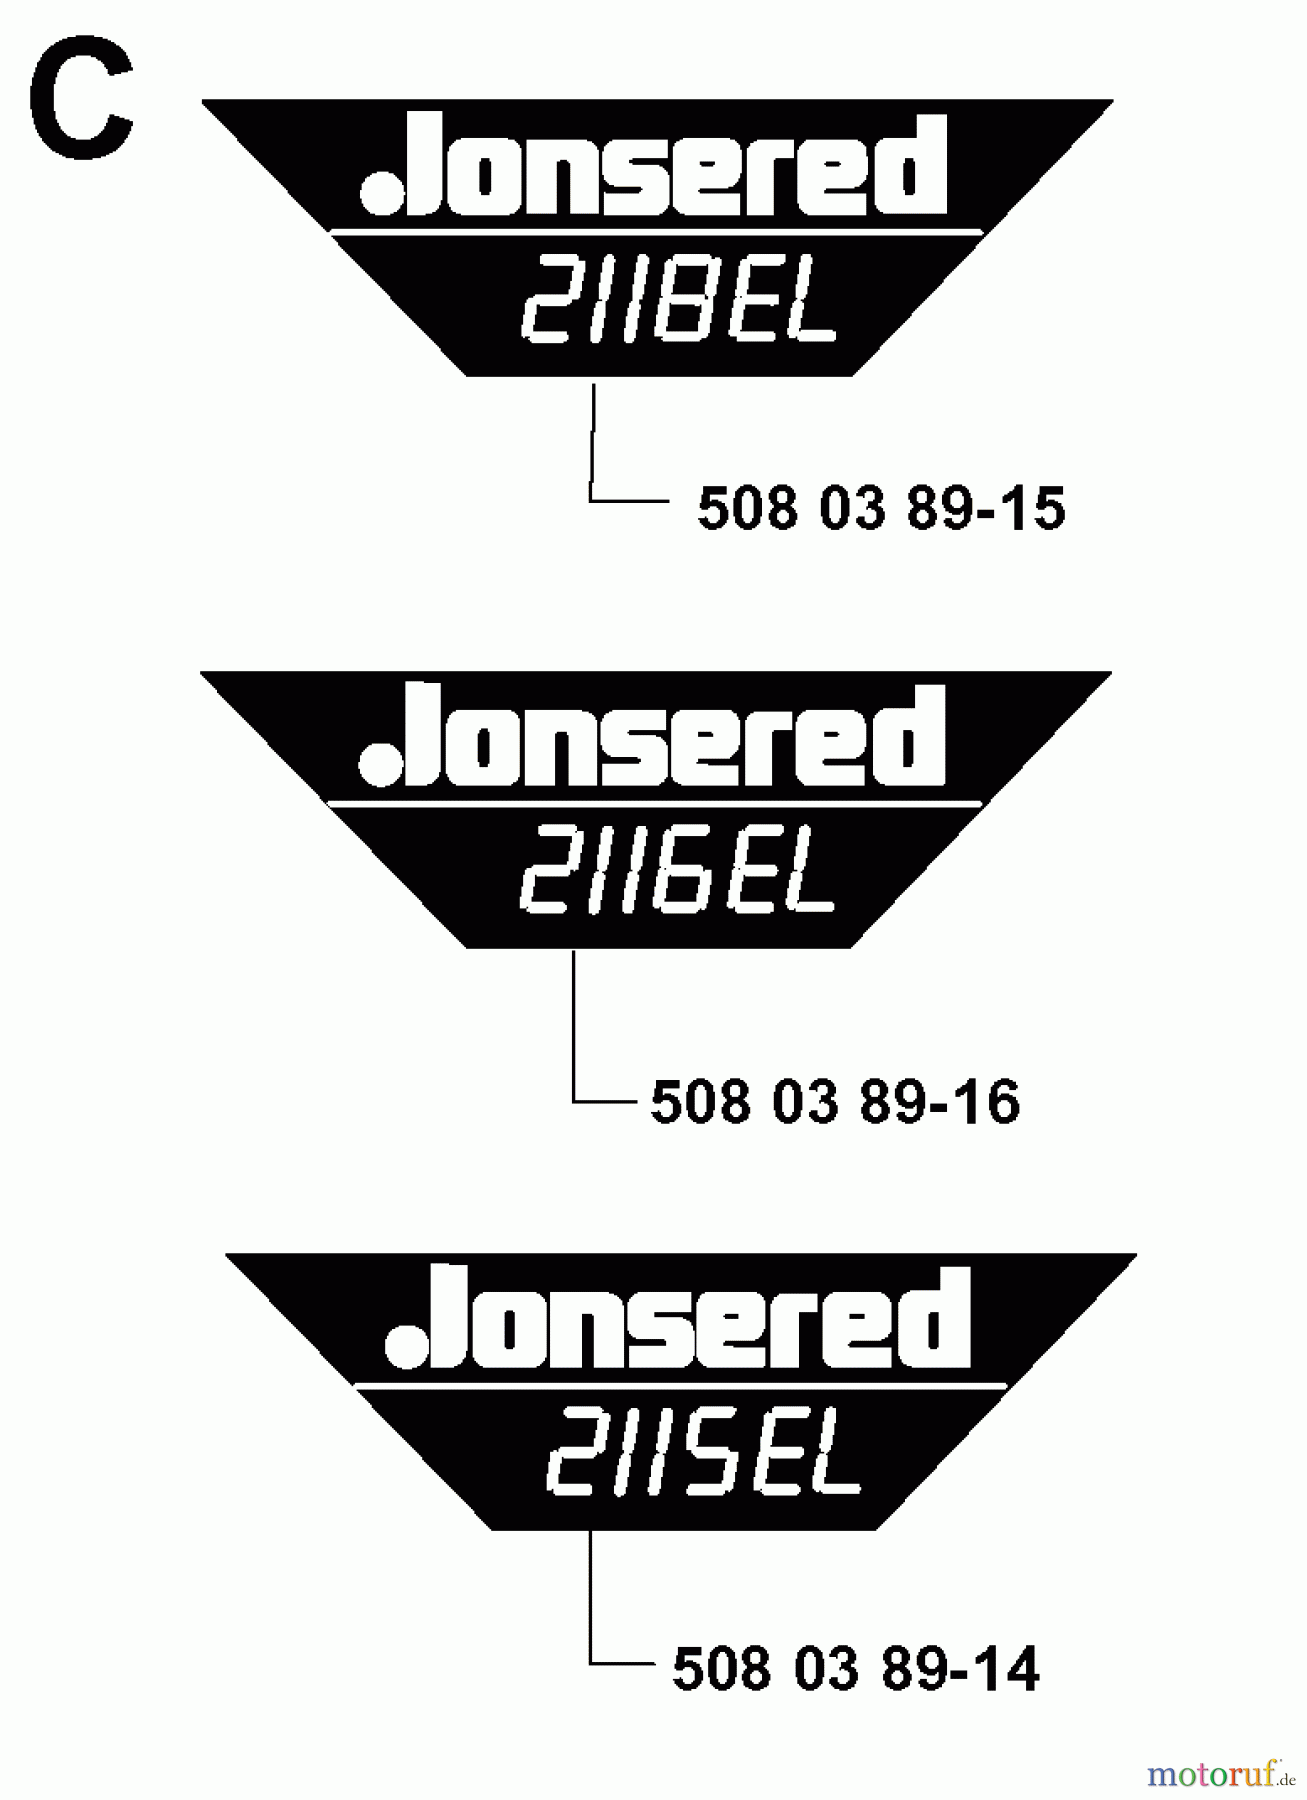  Jonsered Motorsägen 2118EL - Jonsered Chainsaw (2000-02) DECALS